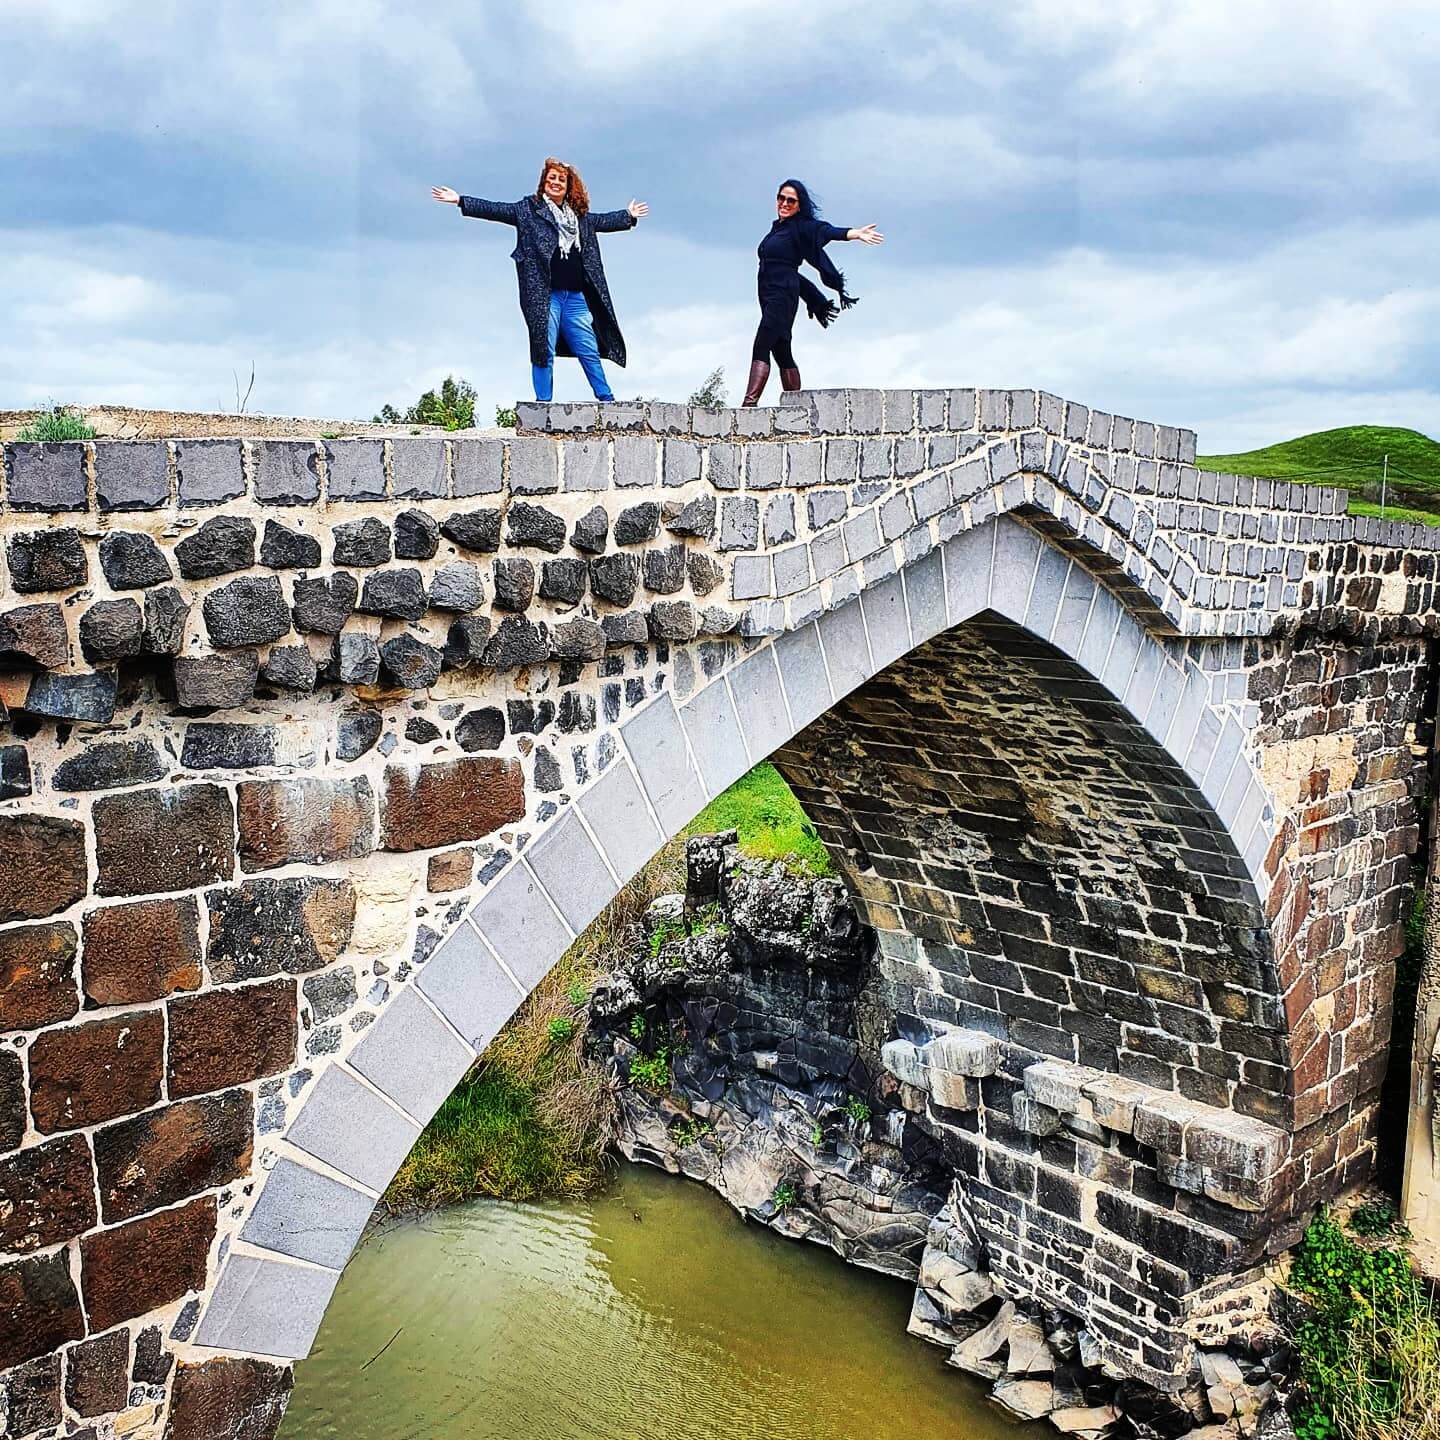 דנה ונושין על הגשר הממלוכי בנהריים בגשר בין ישראל לירדן